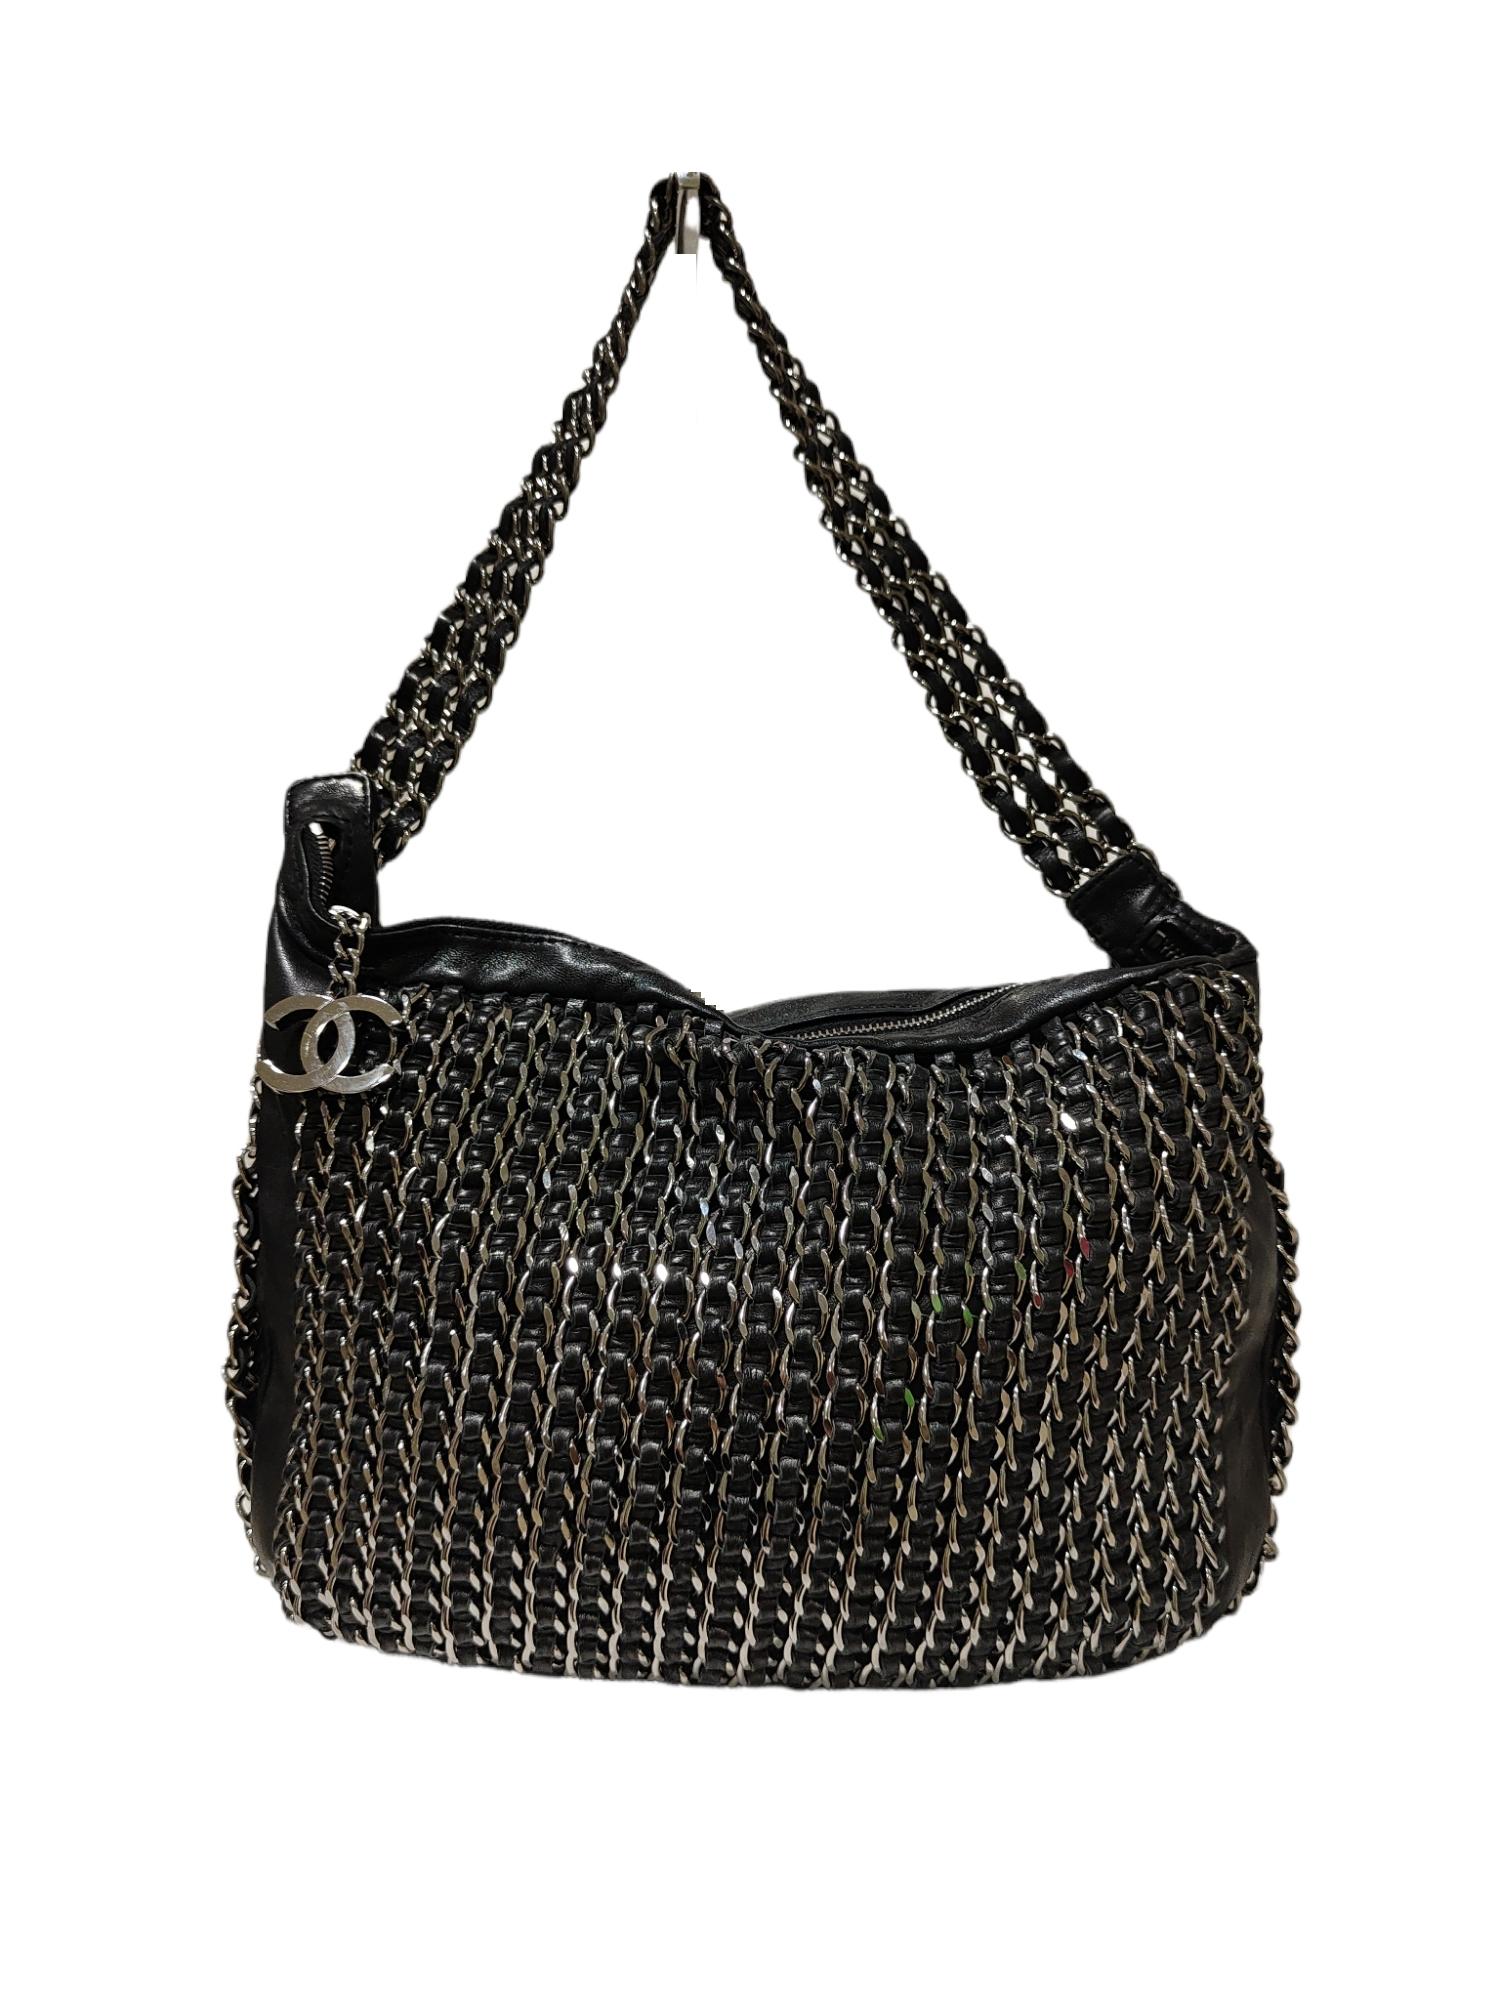 Chanel Black leather chain shoulder bag
30*20 cm, 7 cm depth